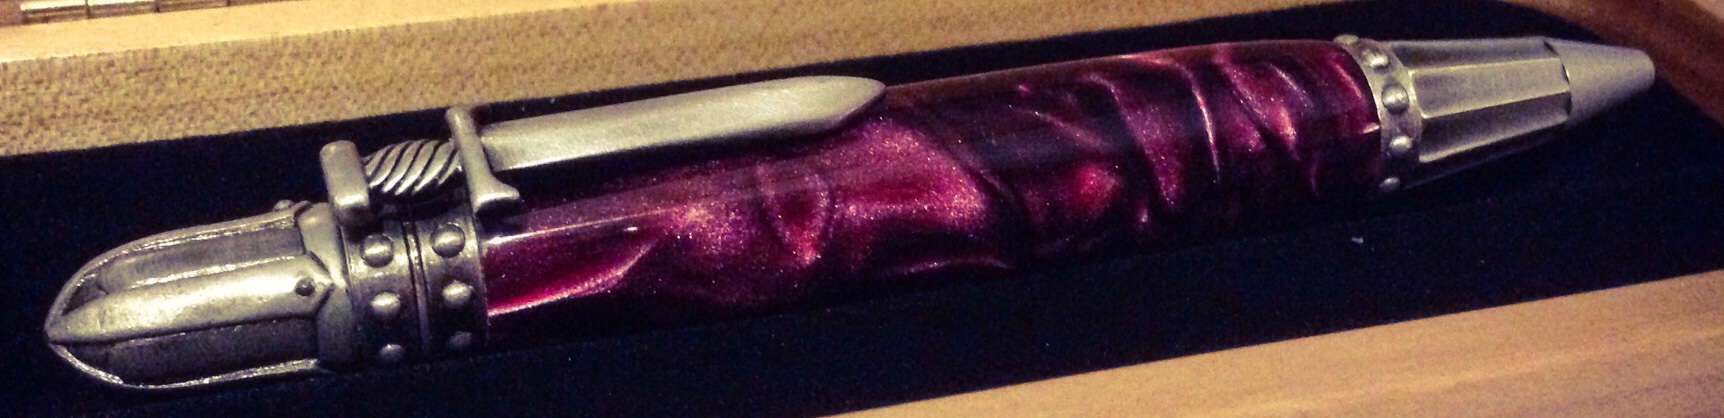 Knights Armor twist pen in Amethyst purple silk acrylic